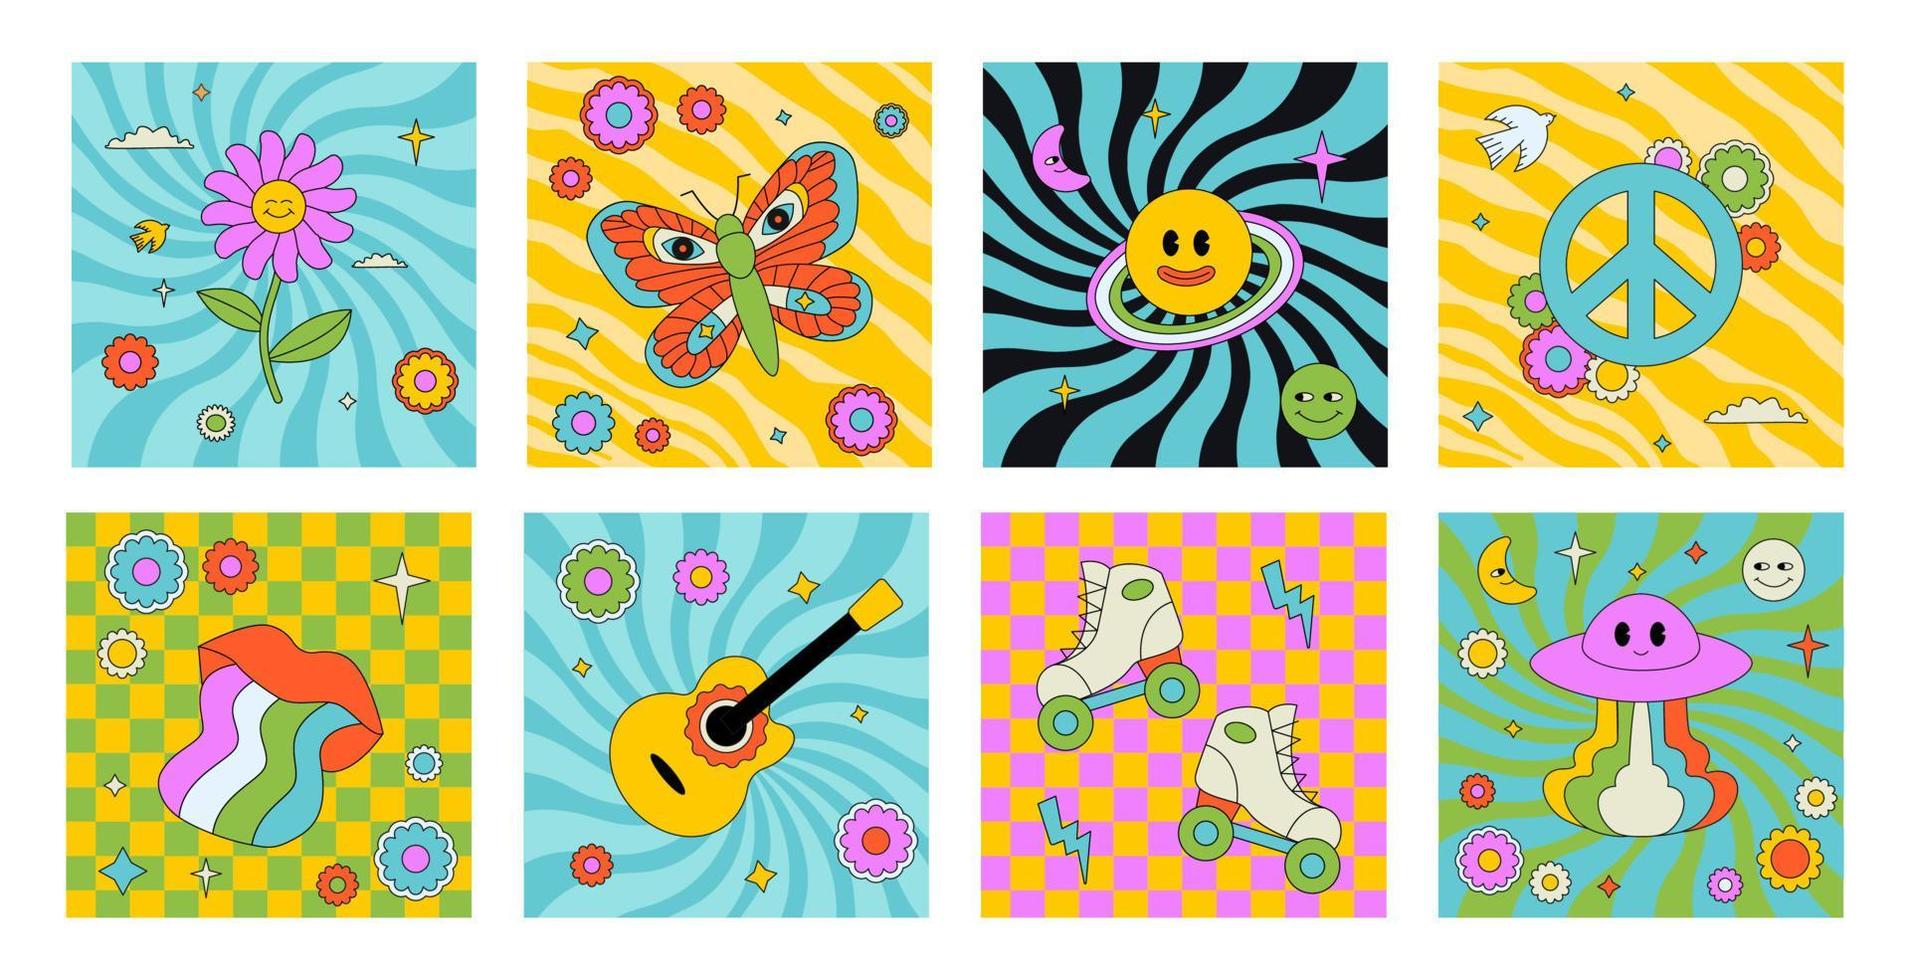 coleção de adesivos hippies coloridos, patches com diferentes elementos funky no estilo dos anos 1960, 1970. vetor